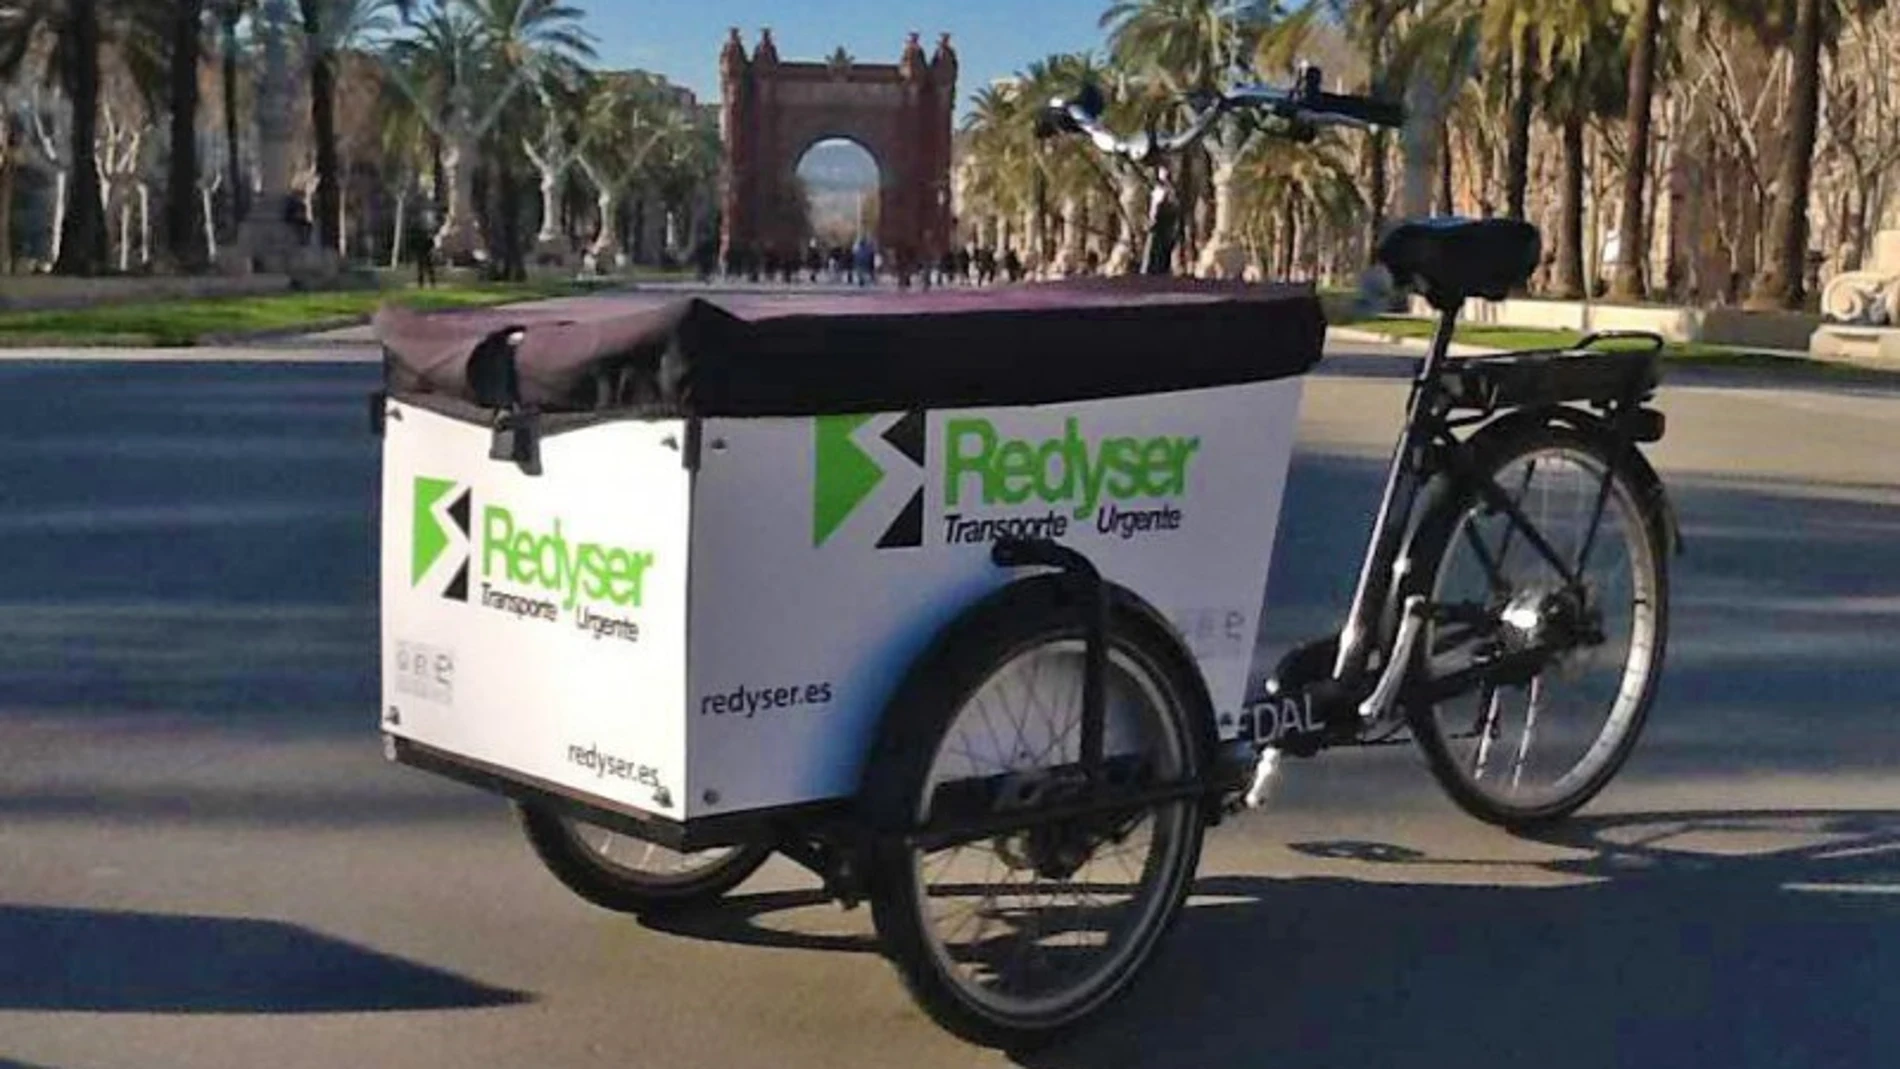 Redyser adquiere la empresa de entregas sostenibles para e-commerce Emakers